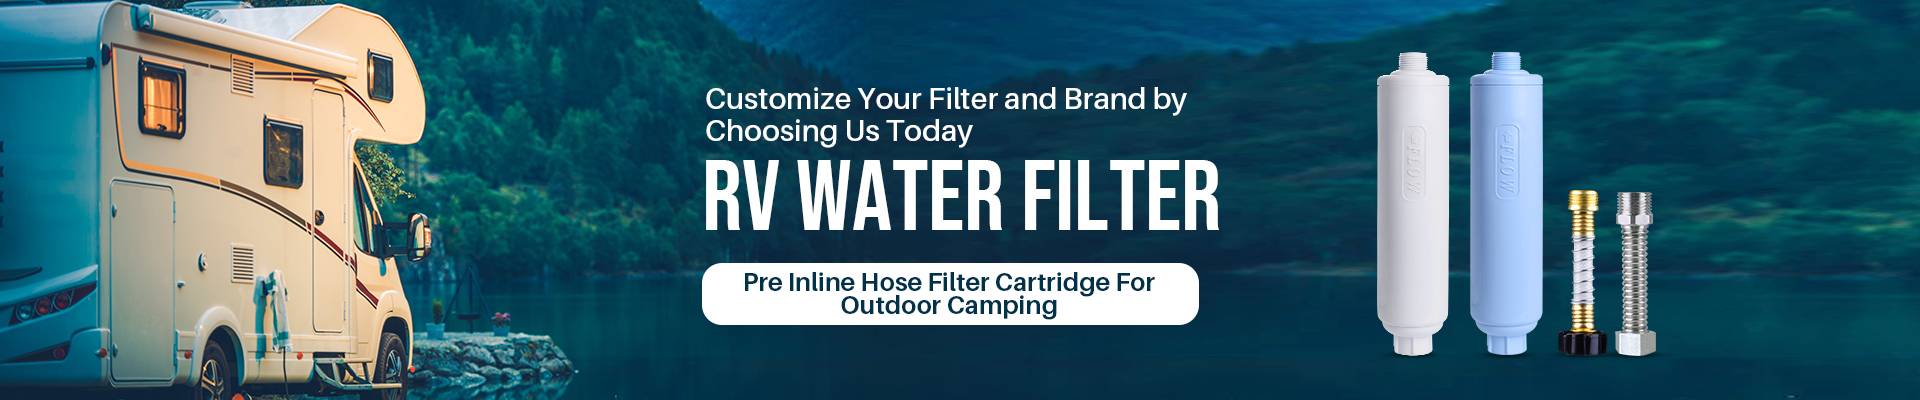 RV/Marine Water Filter